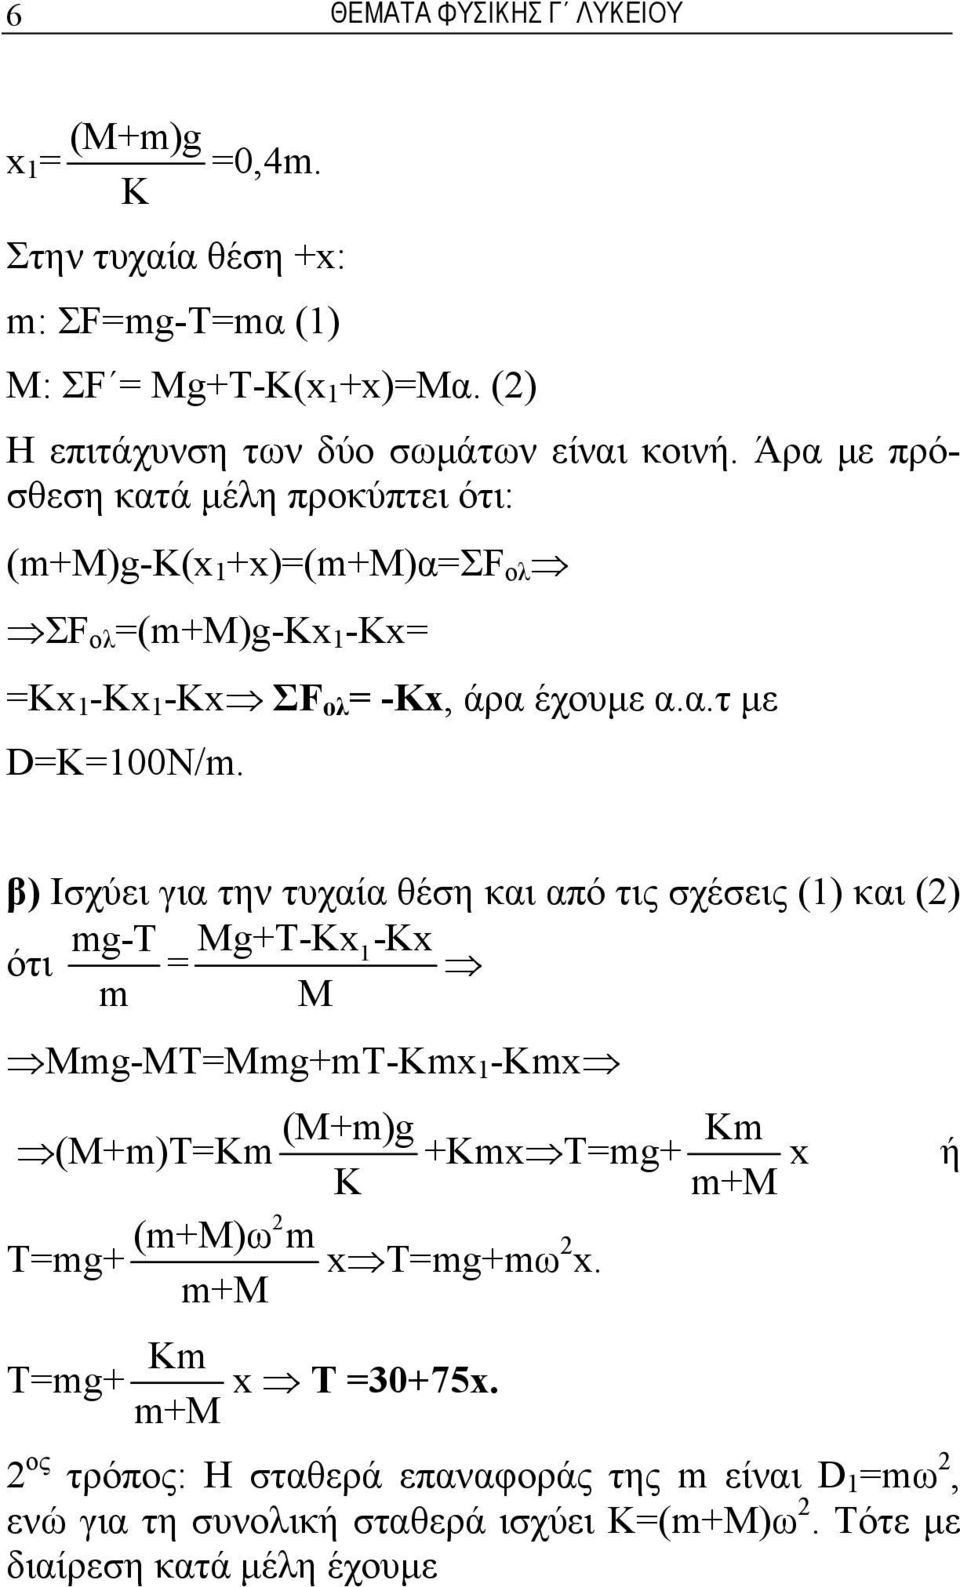 β) Ισχύει για την τυχαία θέση και από τις σχέσεις (1) και (2) ότι mg-t m = Mg+T-x1-x M Mmg-MT=Mmg+mT-mx 1 -mx (M+m)T=m (M+m)g +mx T=mg+ m m+m x 2 (m+m)ω m T=mg+